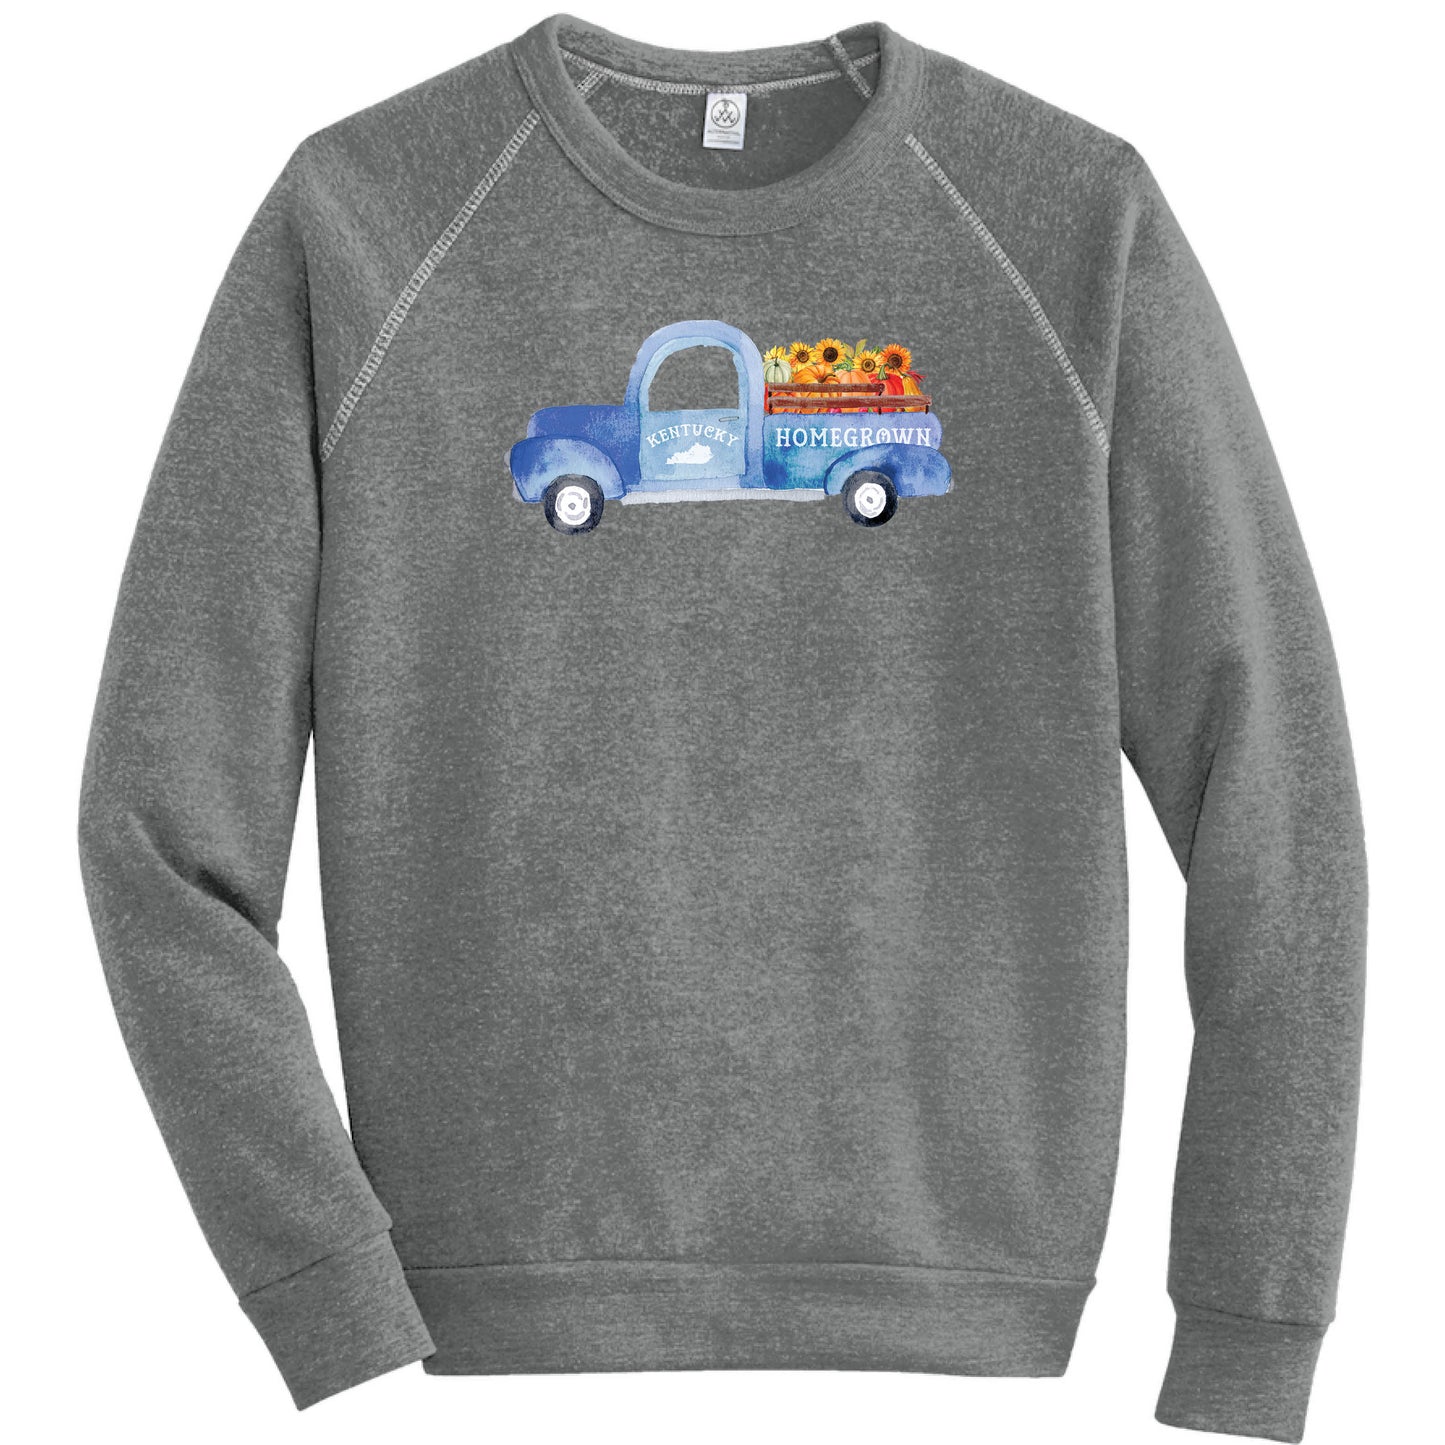 Kentucky Fall Homegrown Truck - Fleece Sweatshirt